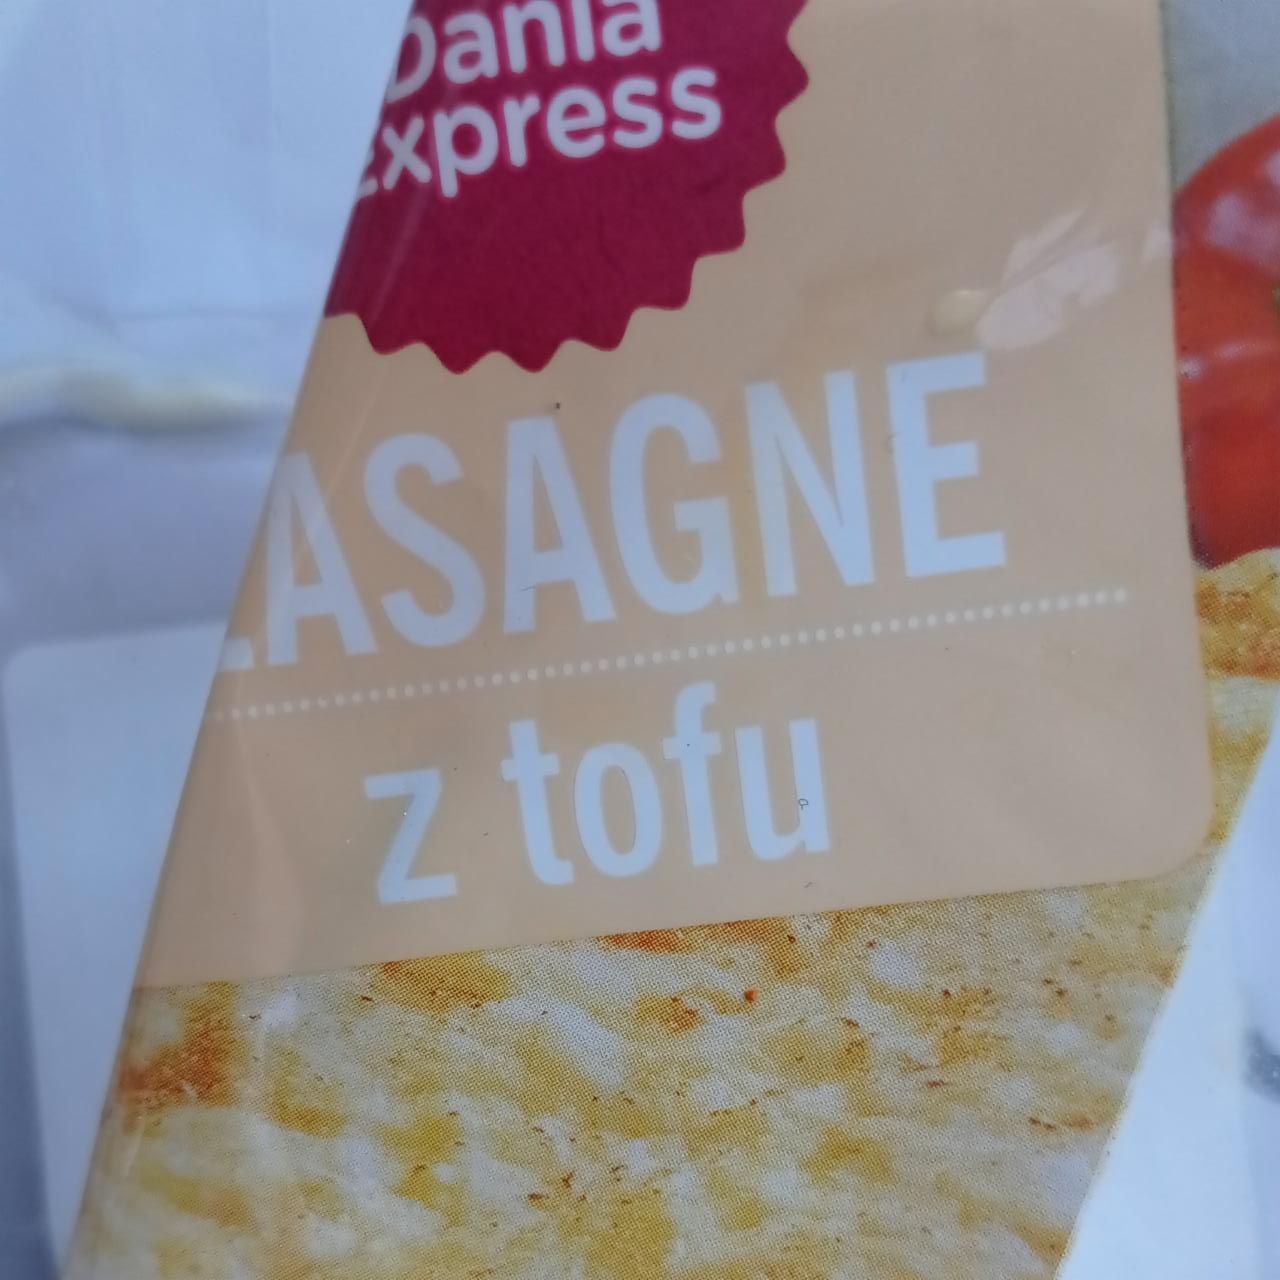 Zdjęcia - Lasagne z tofu Dania express